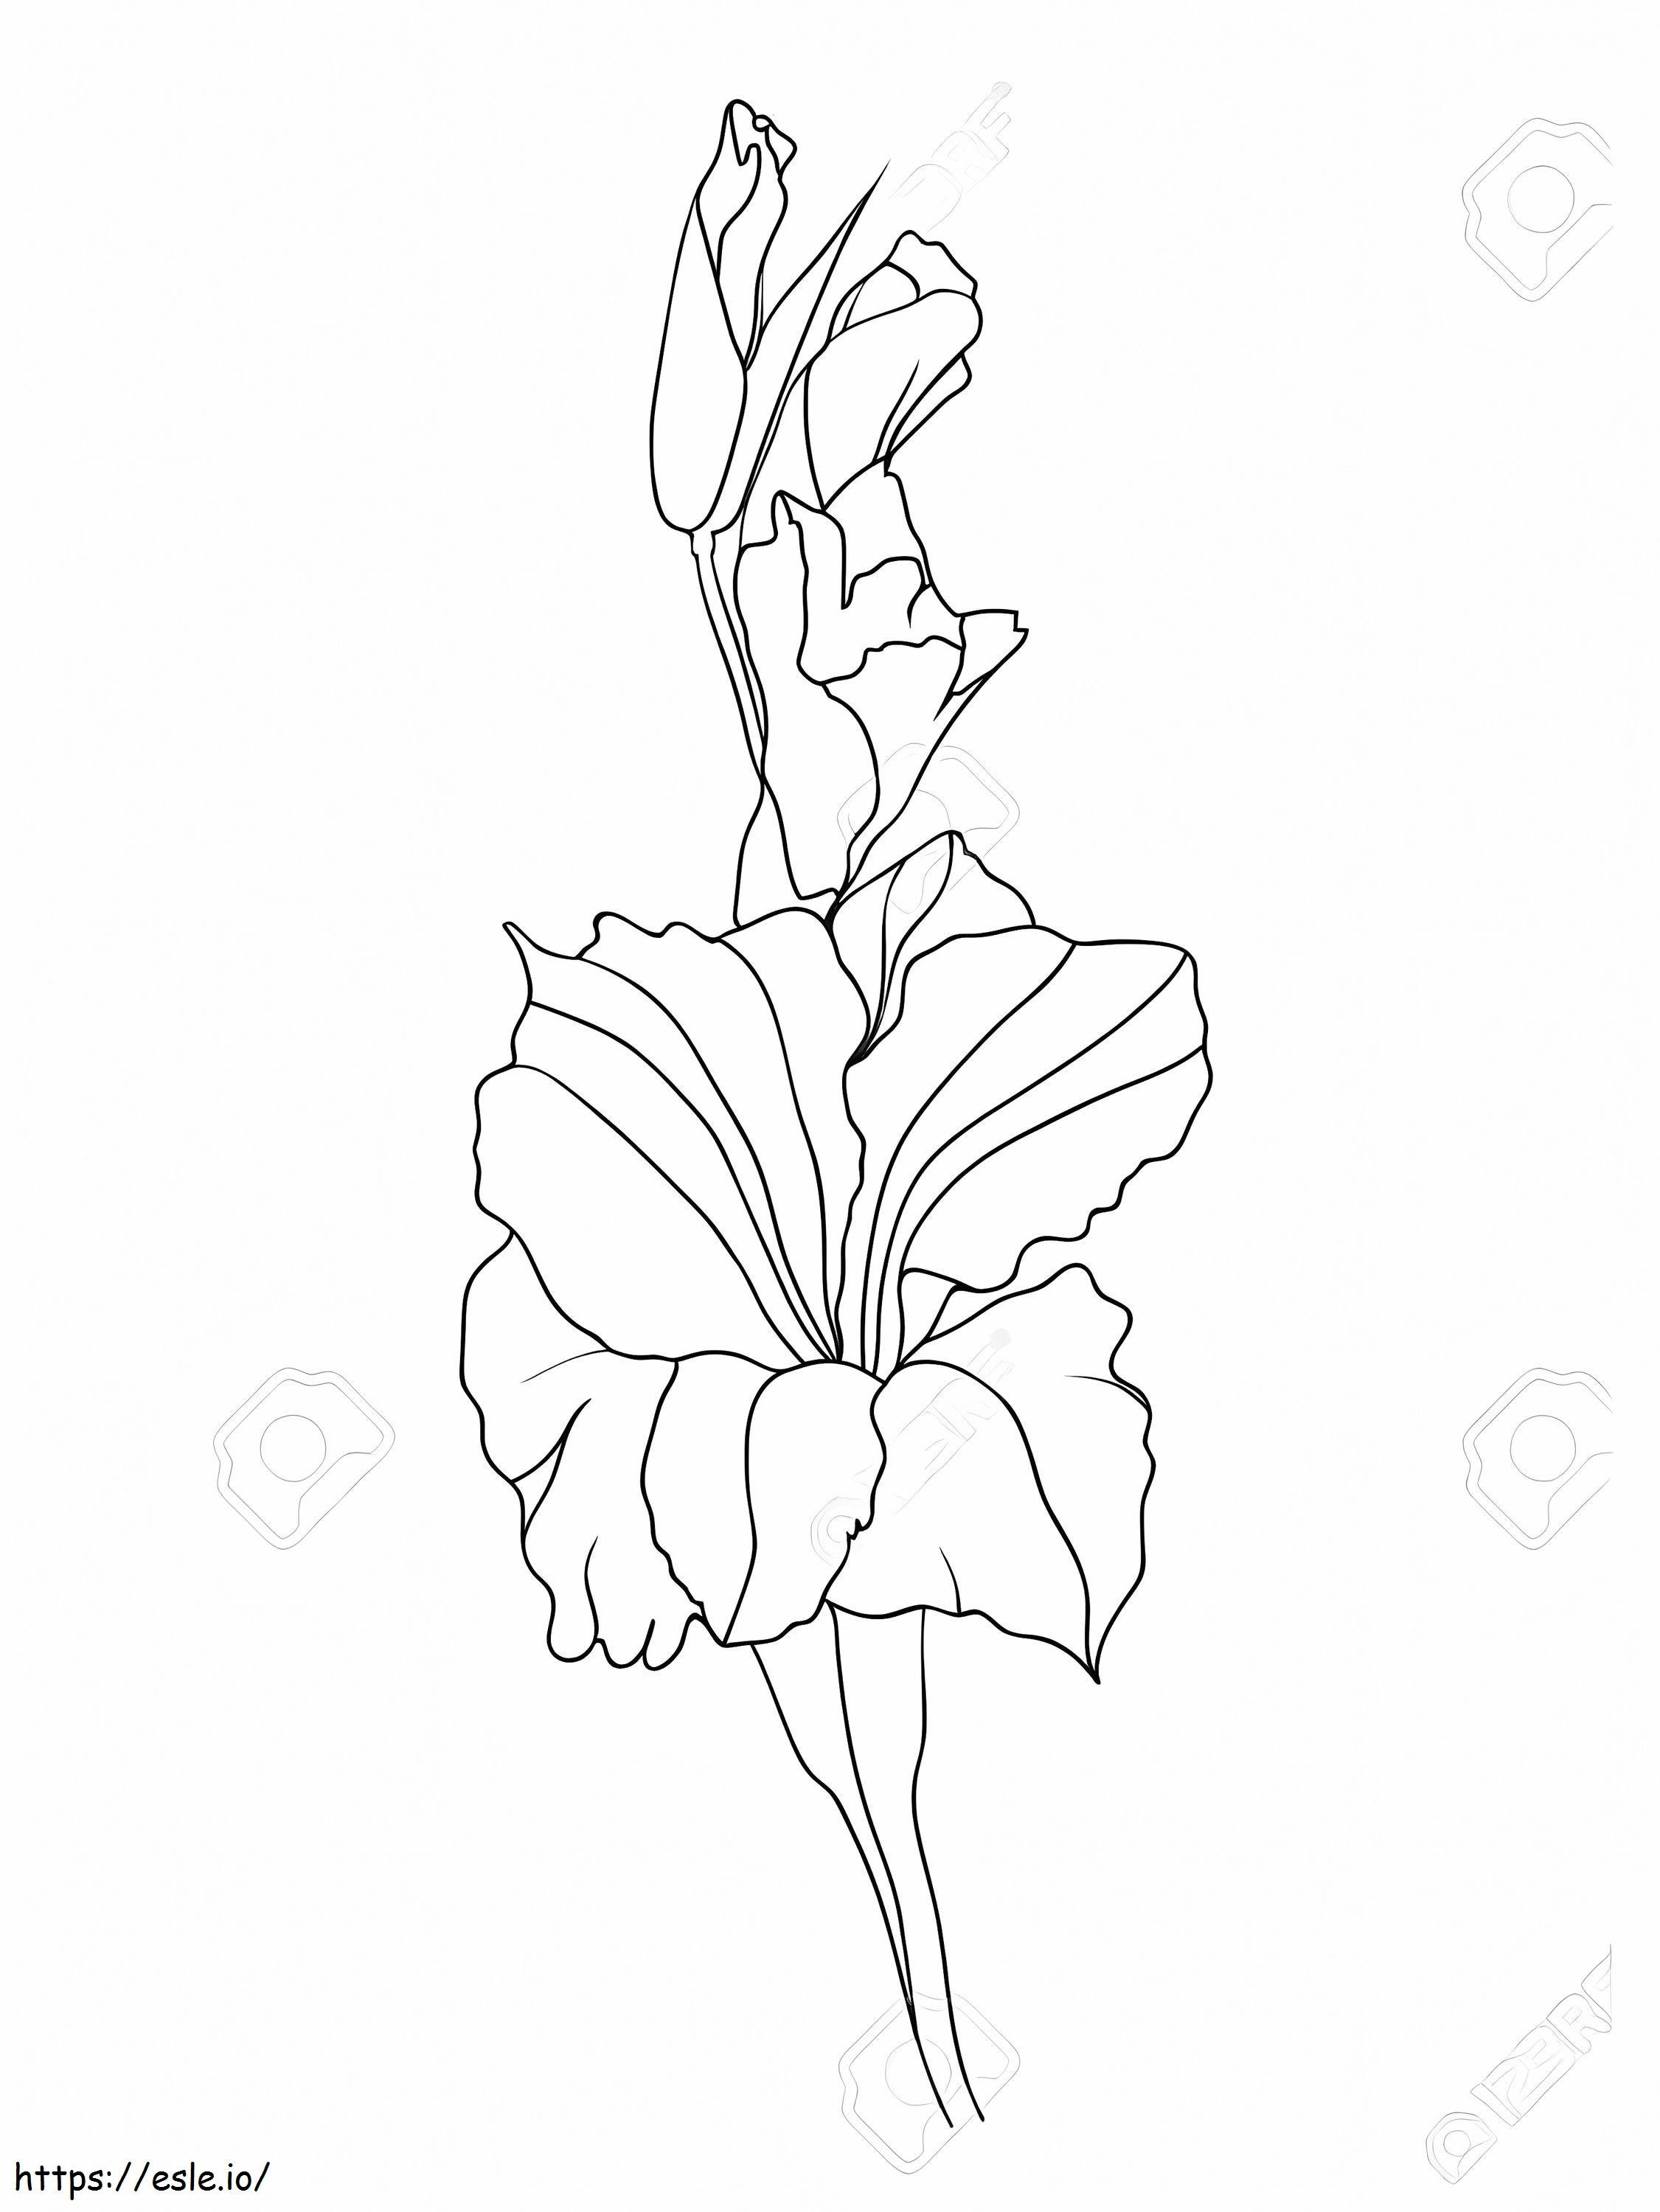 Gladiolenblüten 16 ausmalbilder